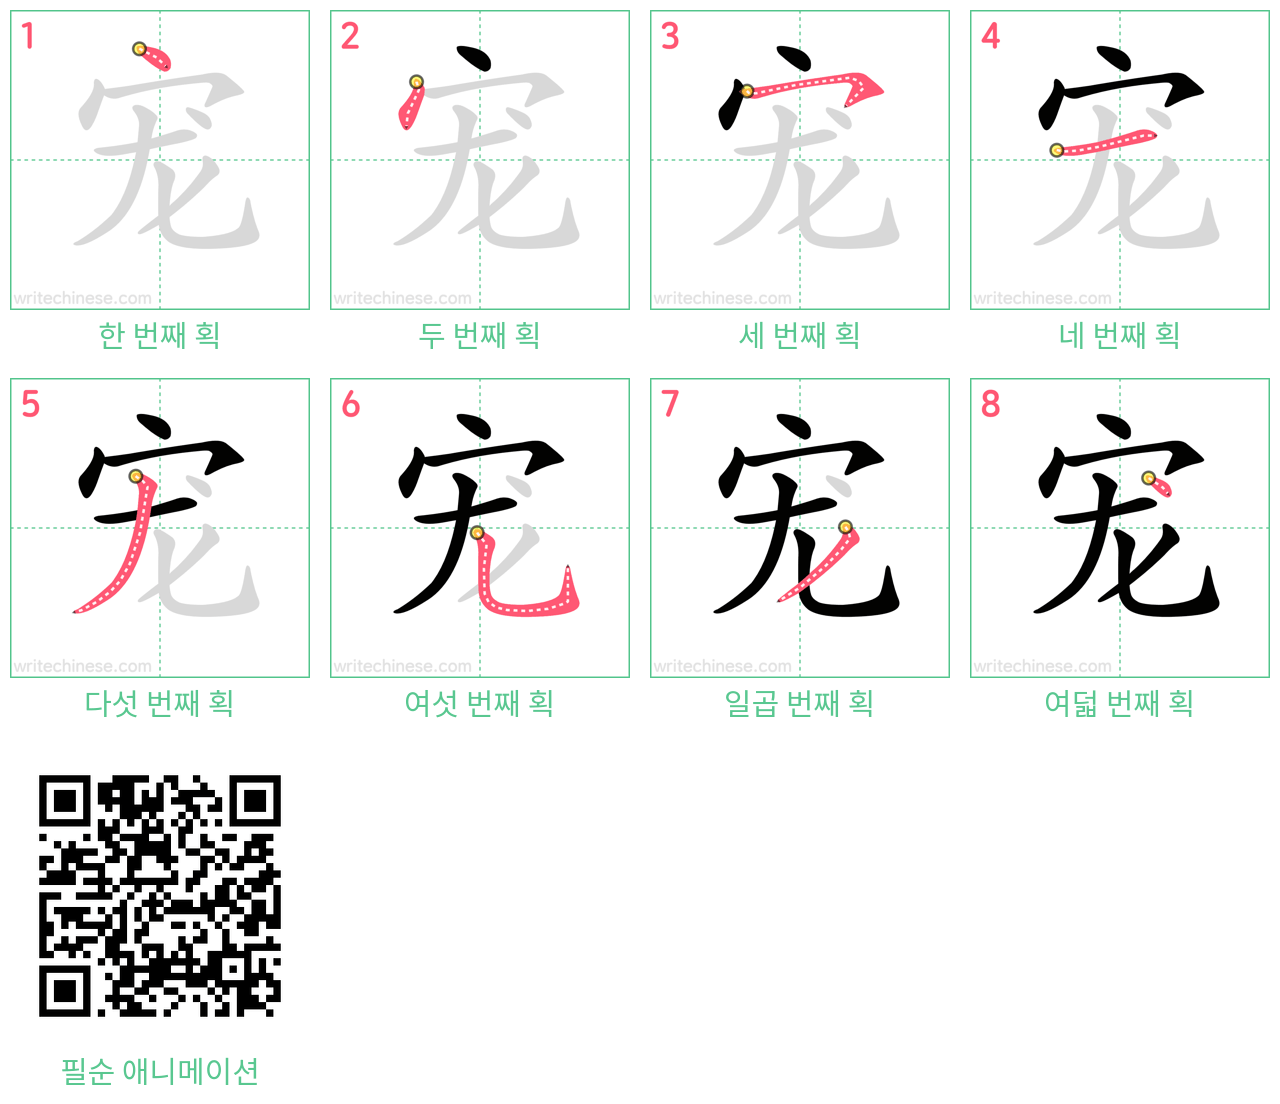 宠 step-by-step stroke order diagrams